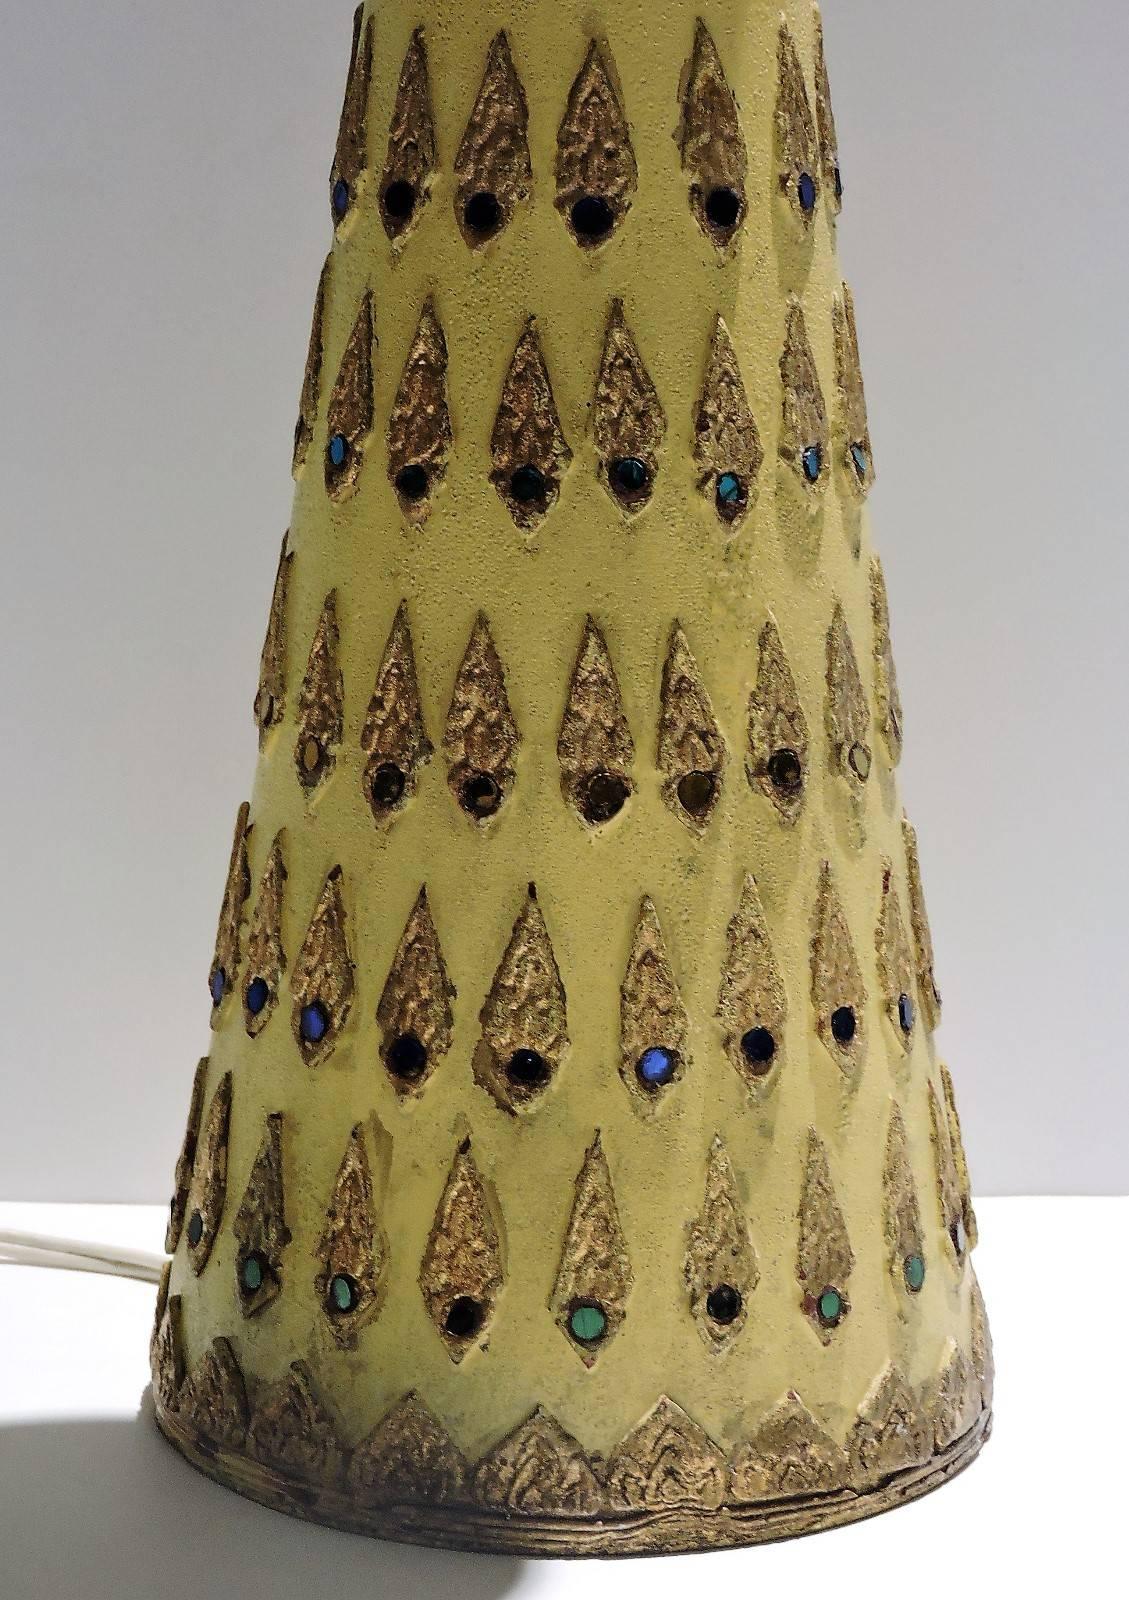 Dans le style de Line Vautrin, une belle lampe de table moderniste française en résine talosel avec des appliques dorées en relief insérées dans des bijoux en verre miroir multicolore. La lampe mesure 24 pouces de haut jusqu'au sommet de la douille